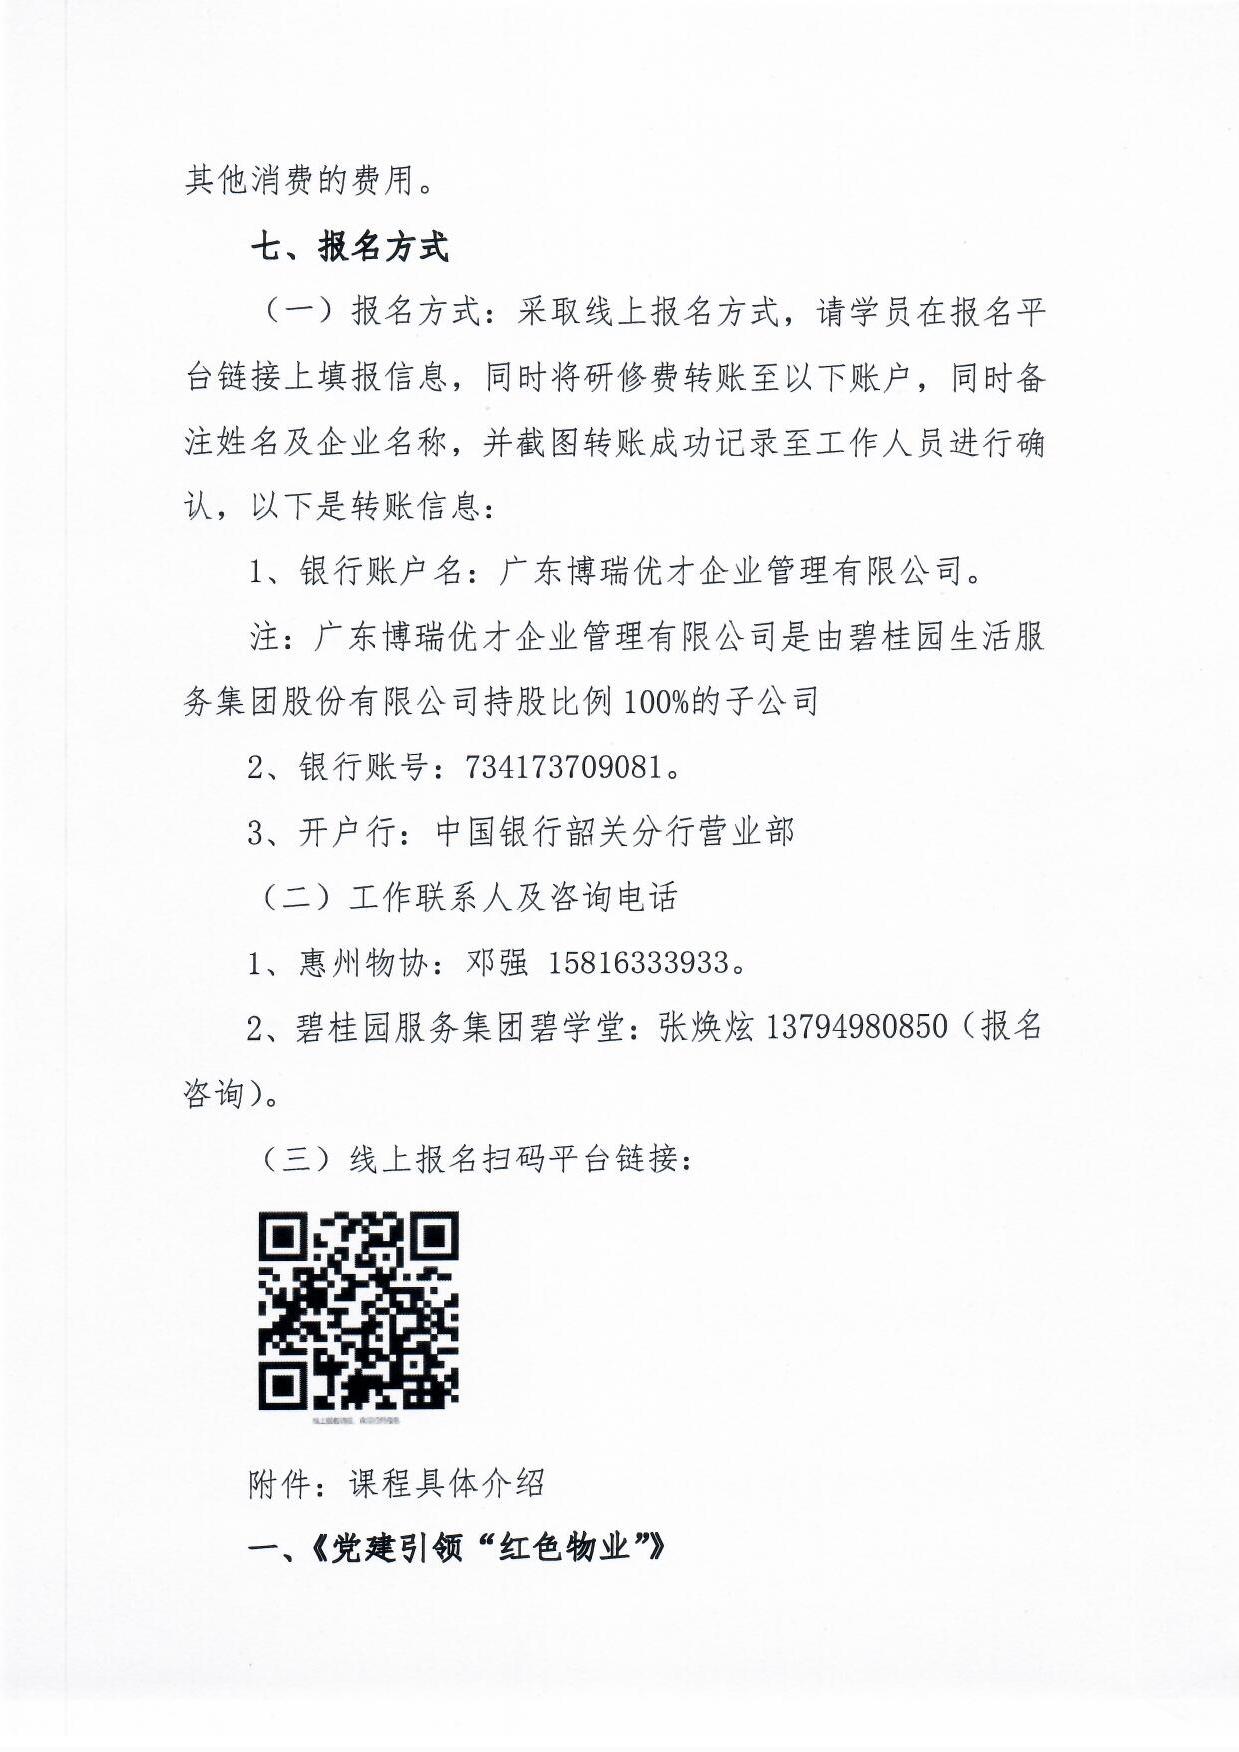 关于举办《物业总裁(惠州)研修营》的通知5.jpg